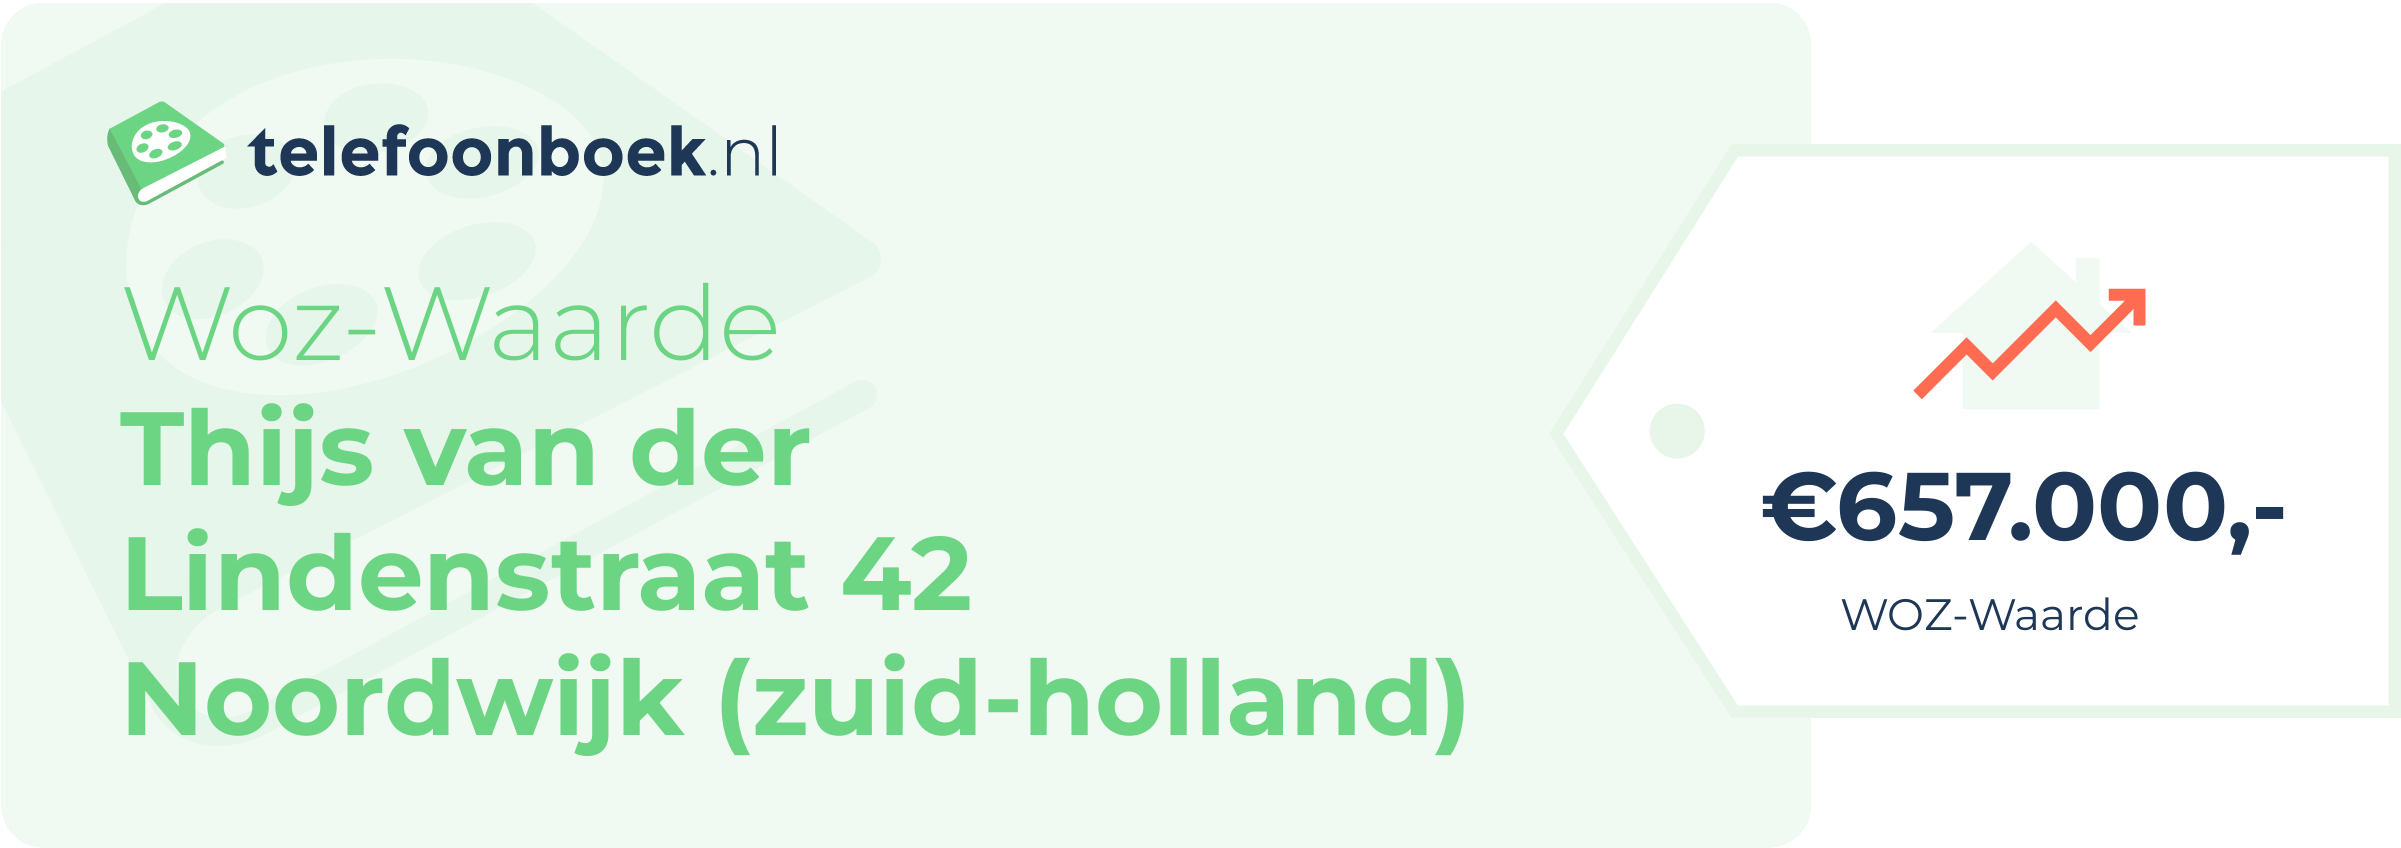 WOZ-waarde Thijs Van Der Lindenstraat 42 Noordwijk (Zuid-Holland)